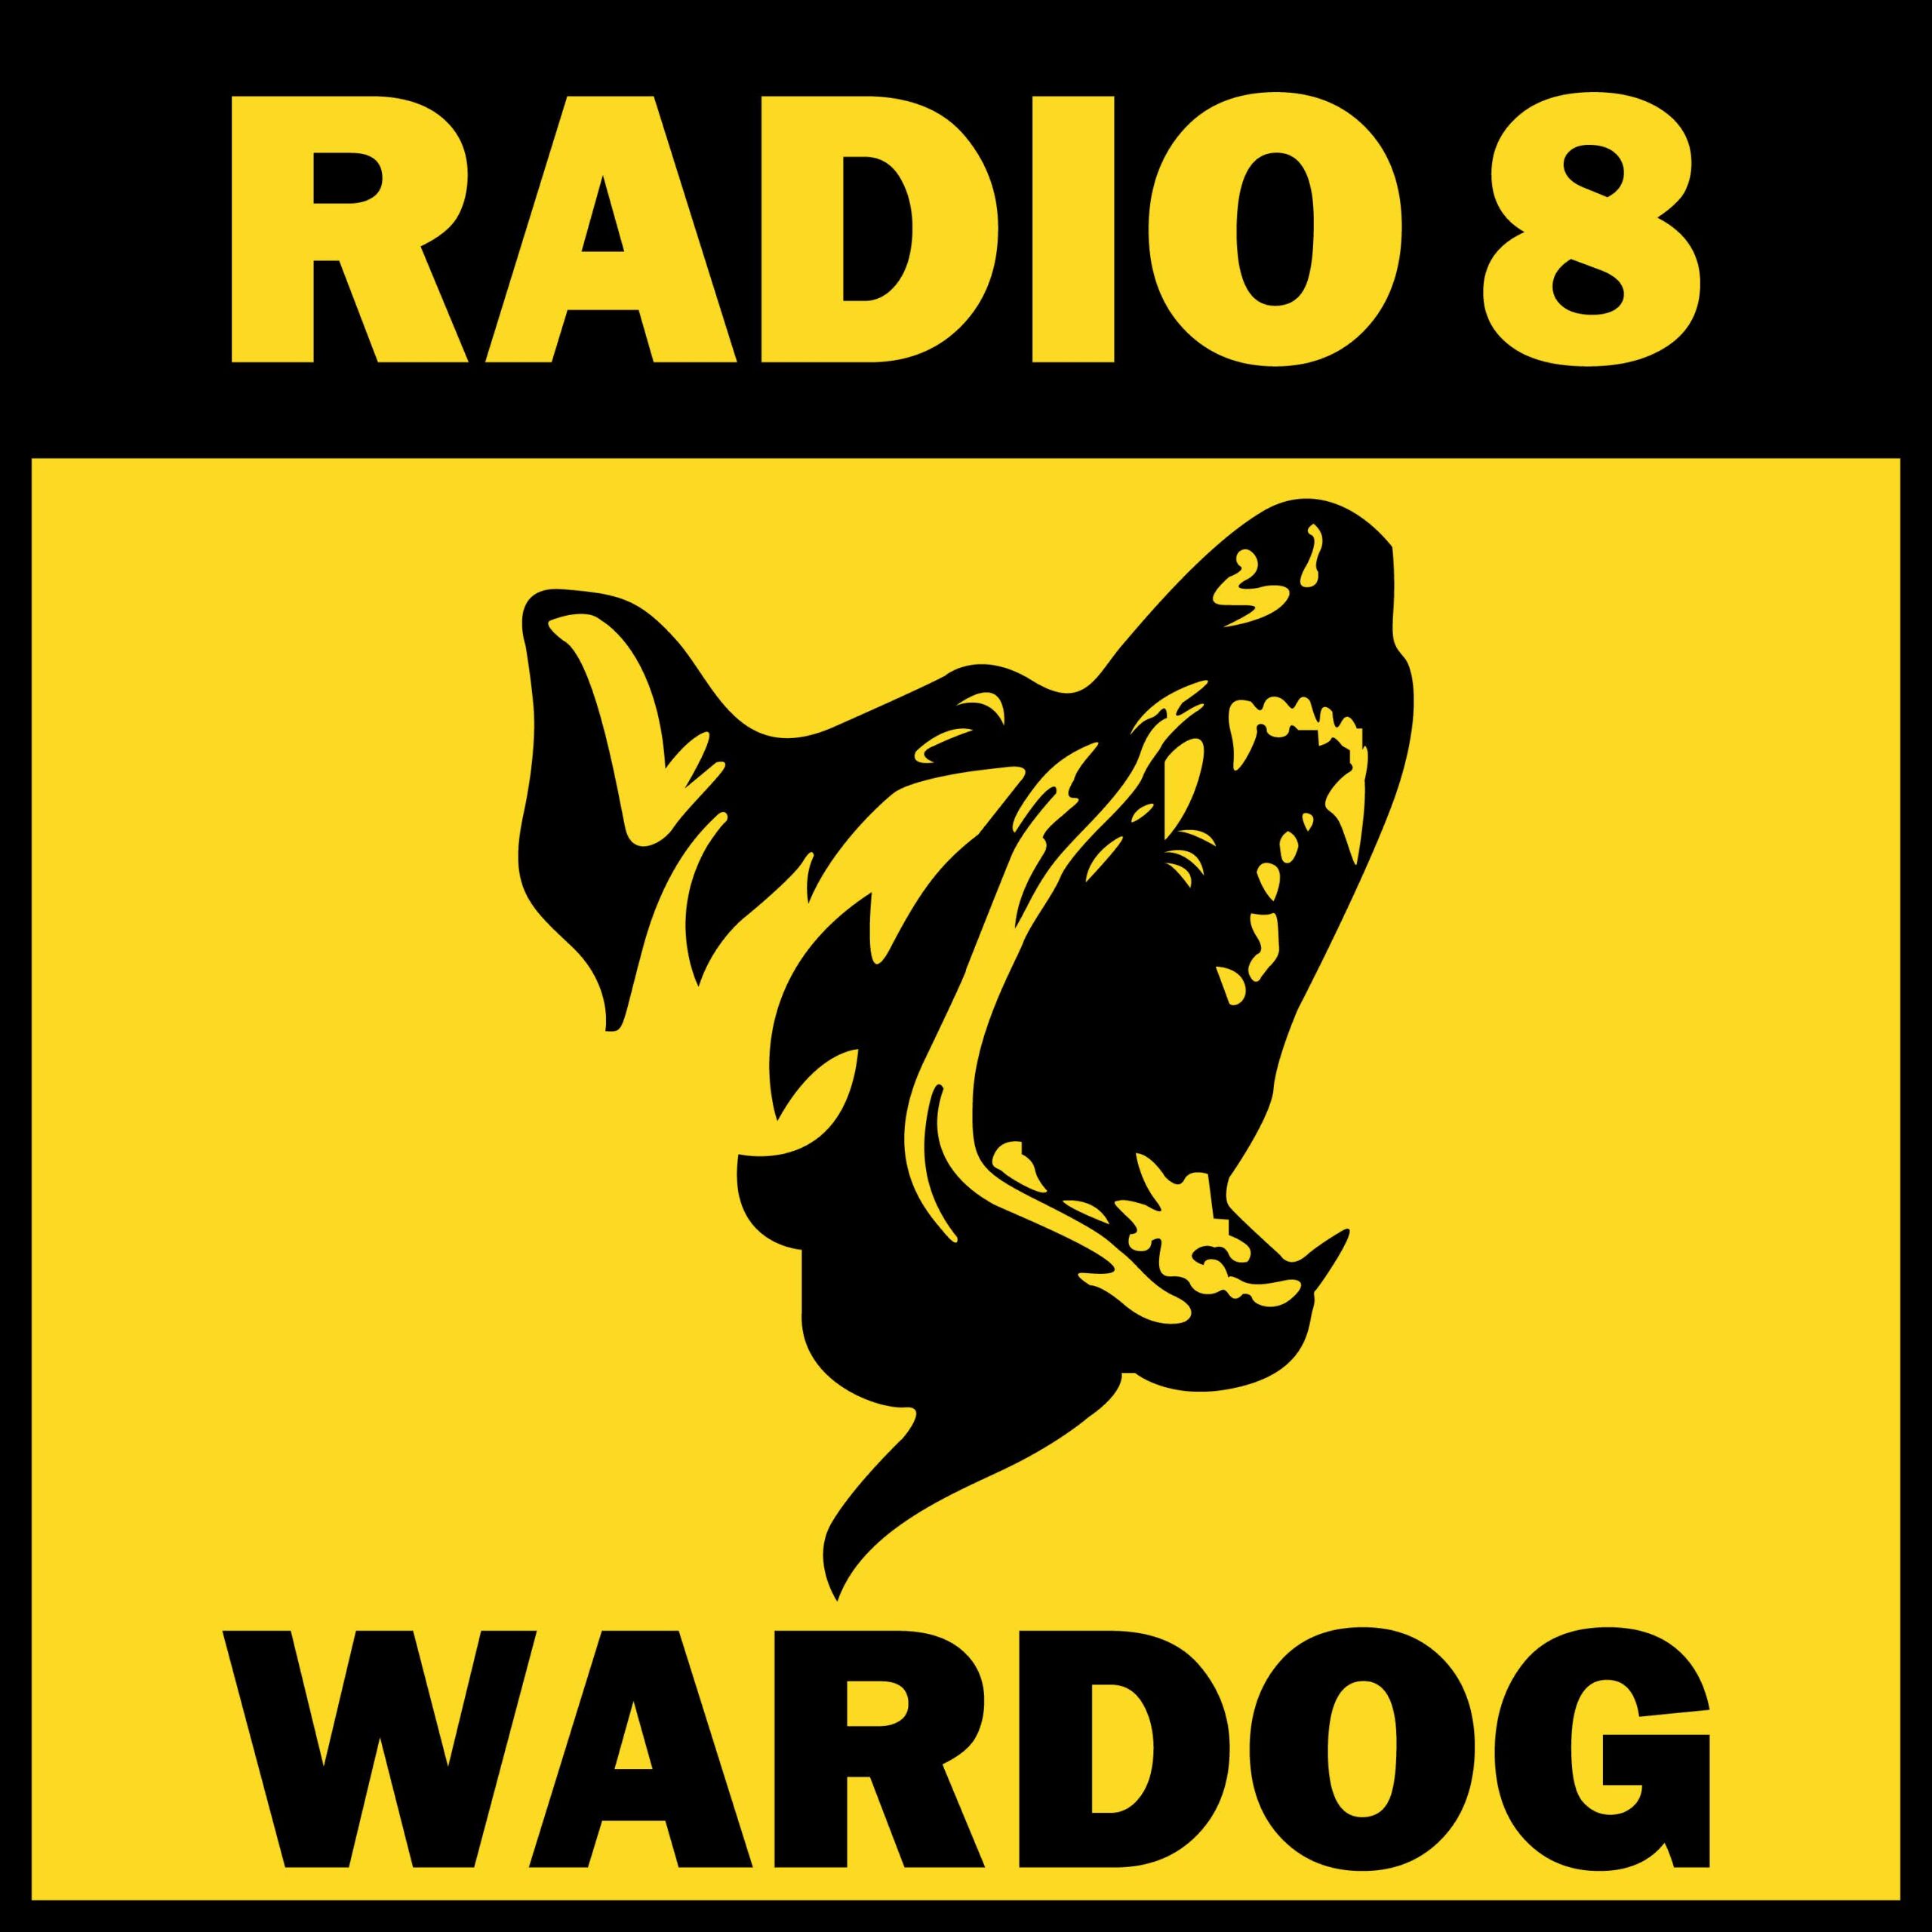 “Wardog” esce in digitale il novo singolo dei RADIO 8